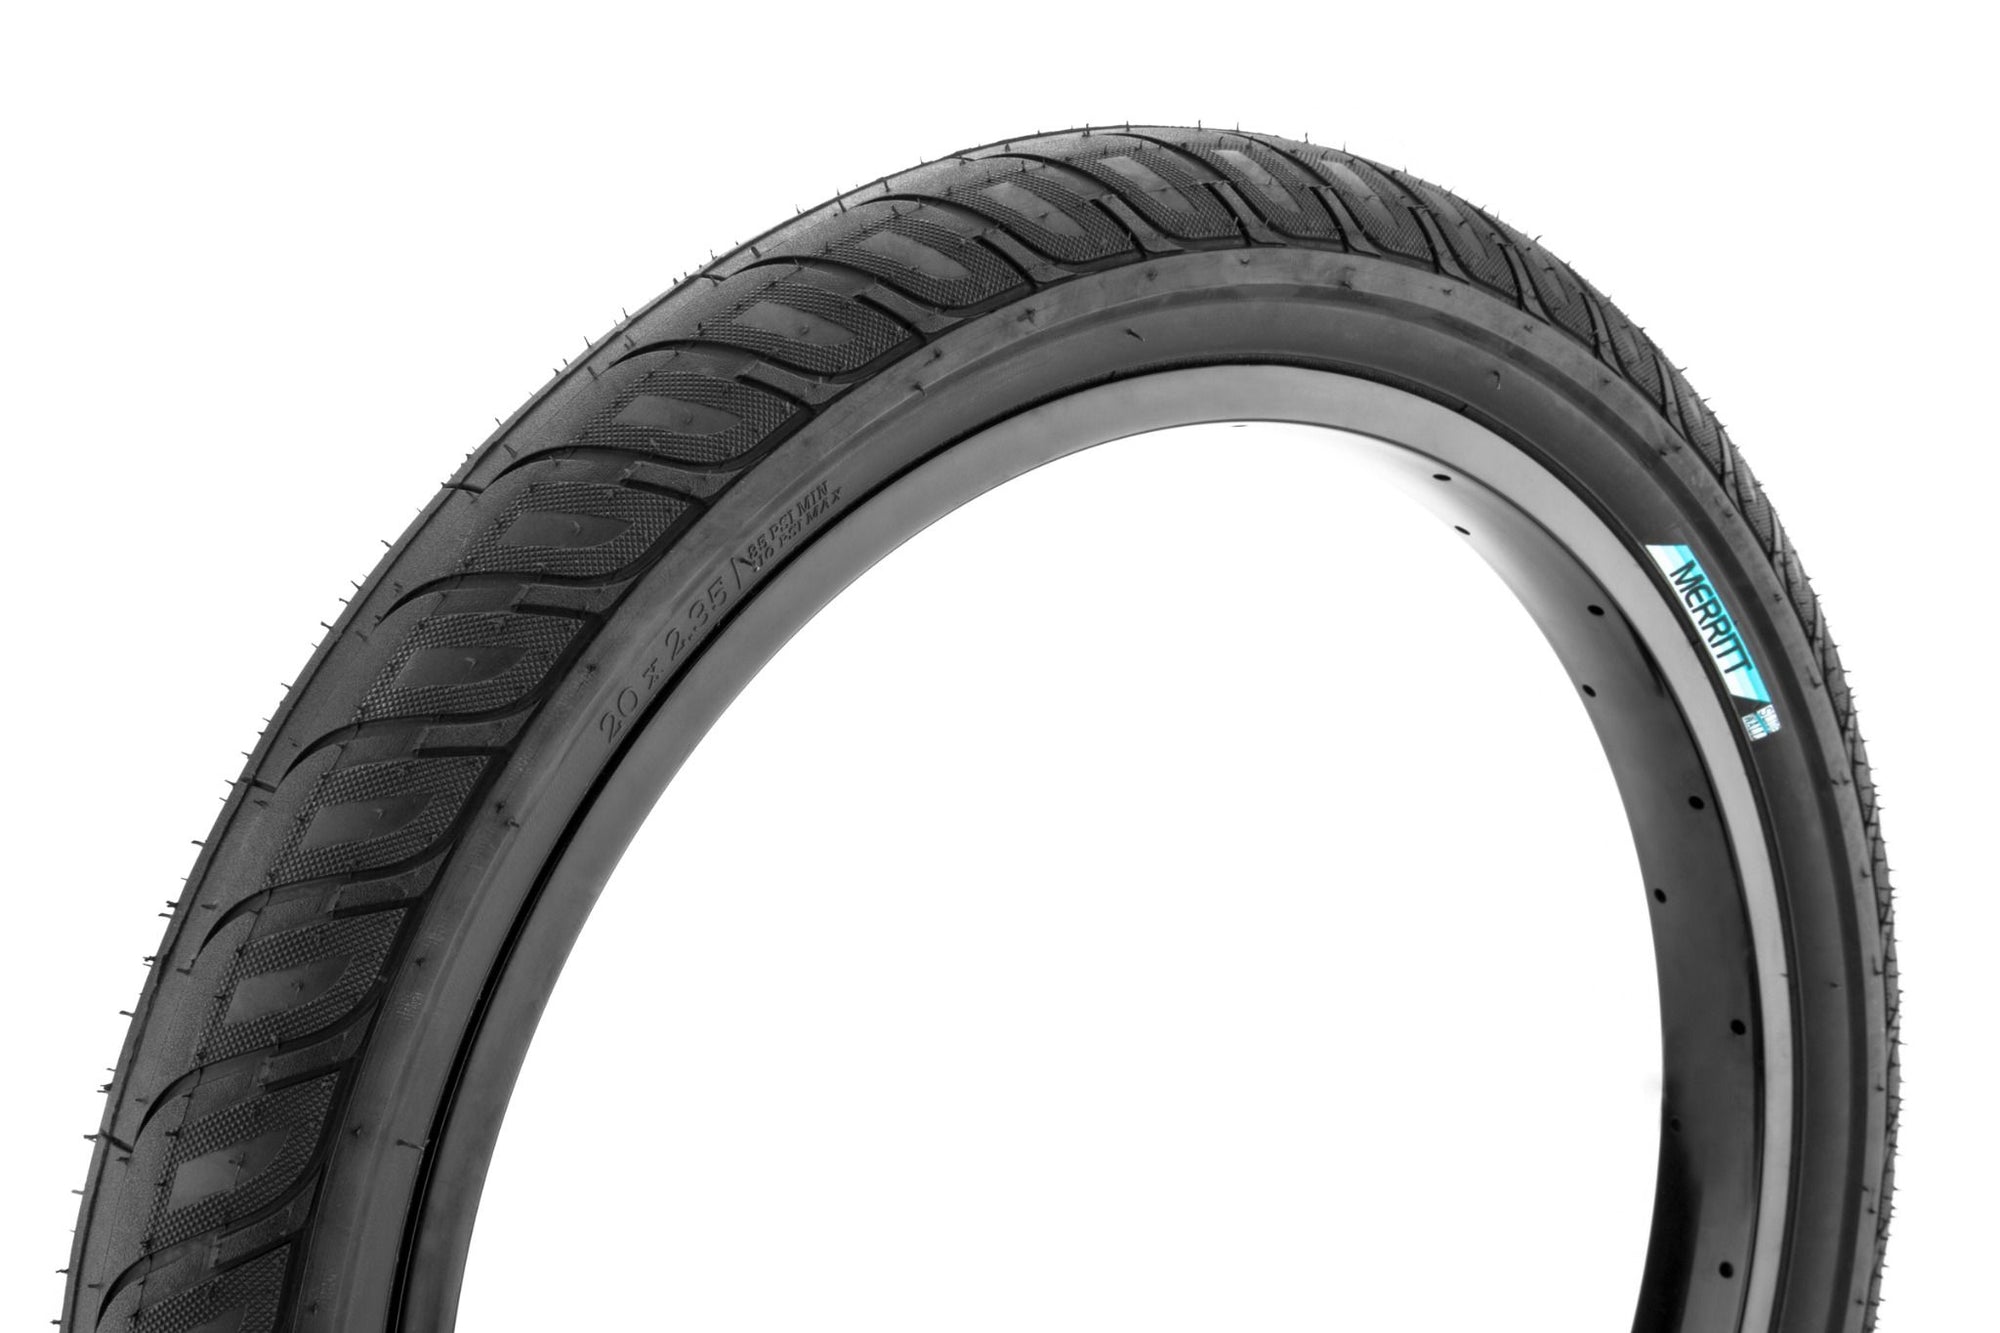 20x2.35 Merritt BMX Option "Slidewall" Tire - 110psi - All Black